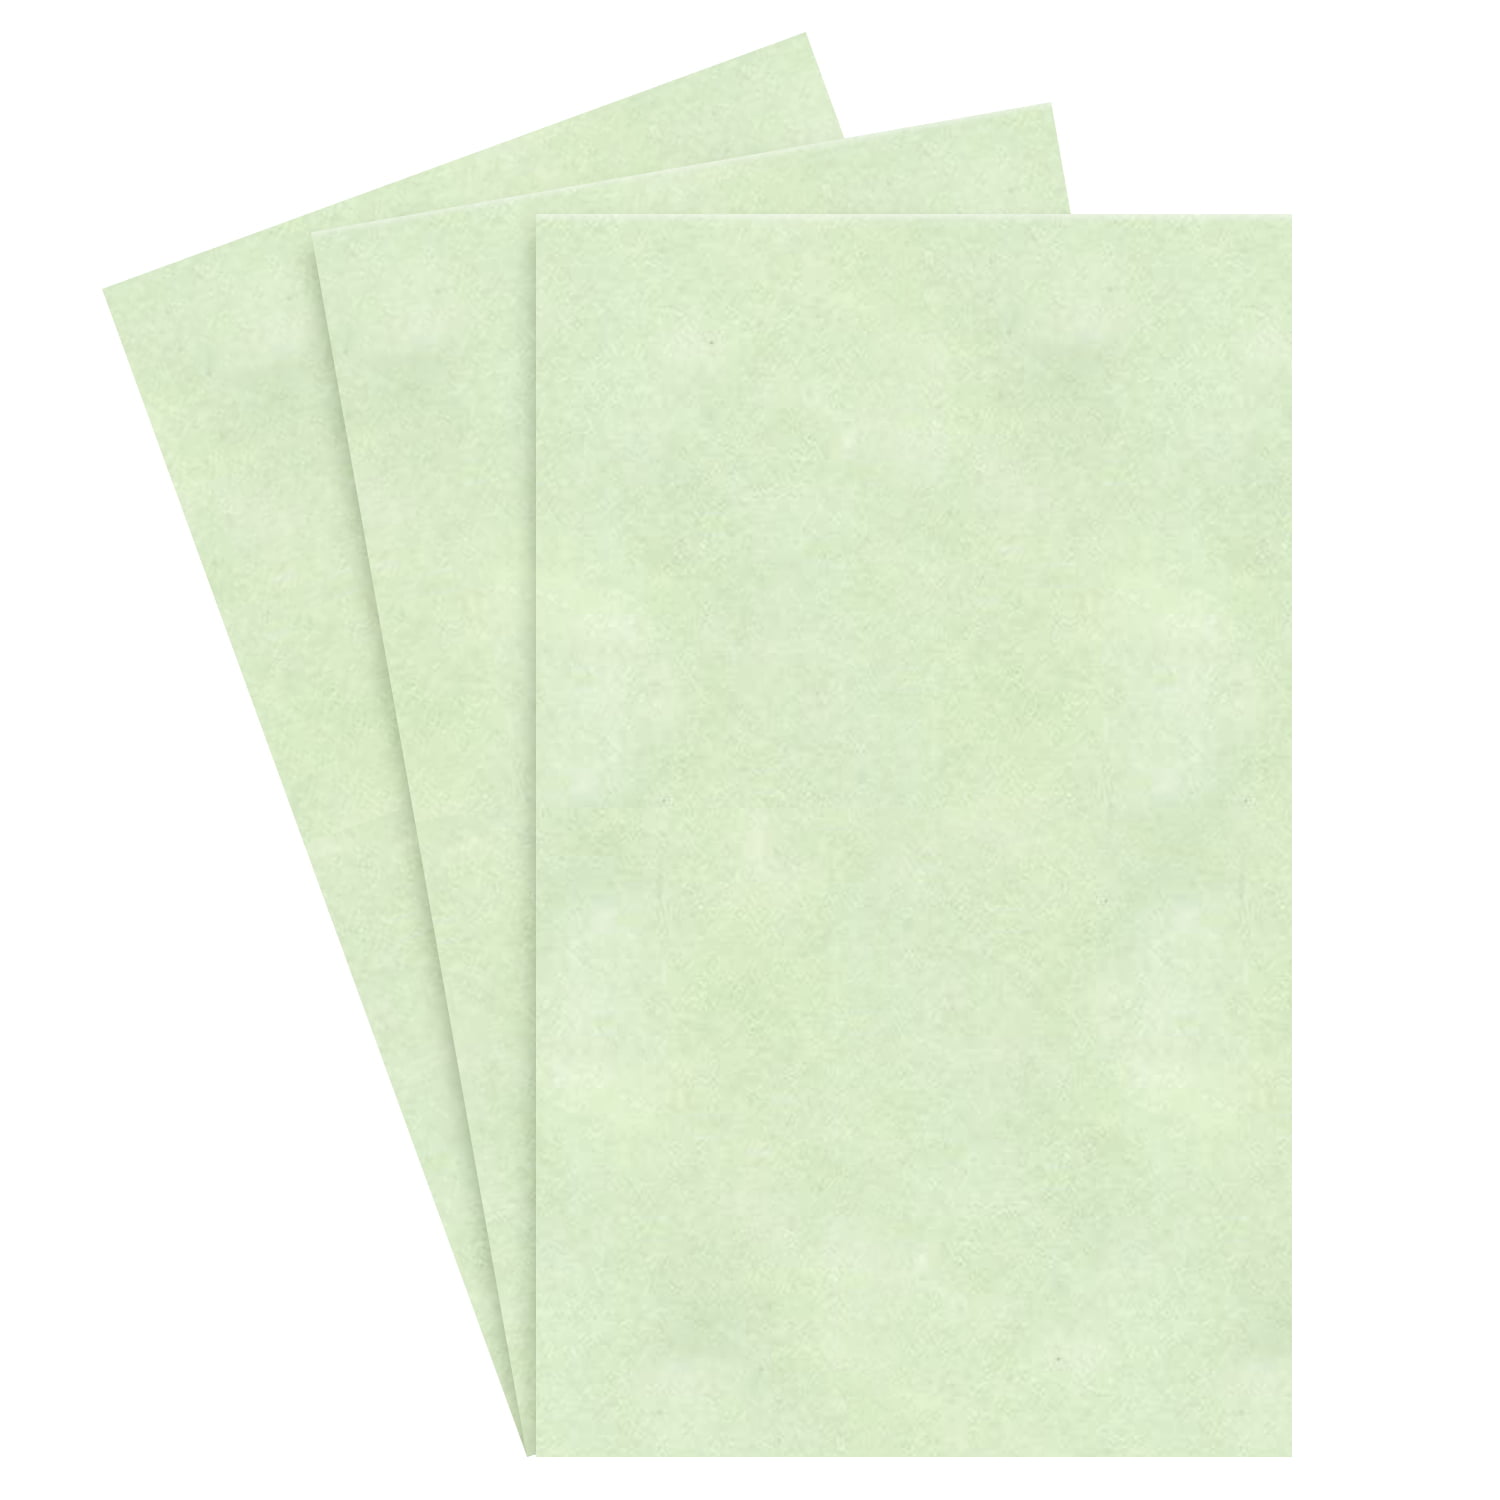 50 Sheets per Package Client Ledger 8.5 x 14 